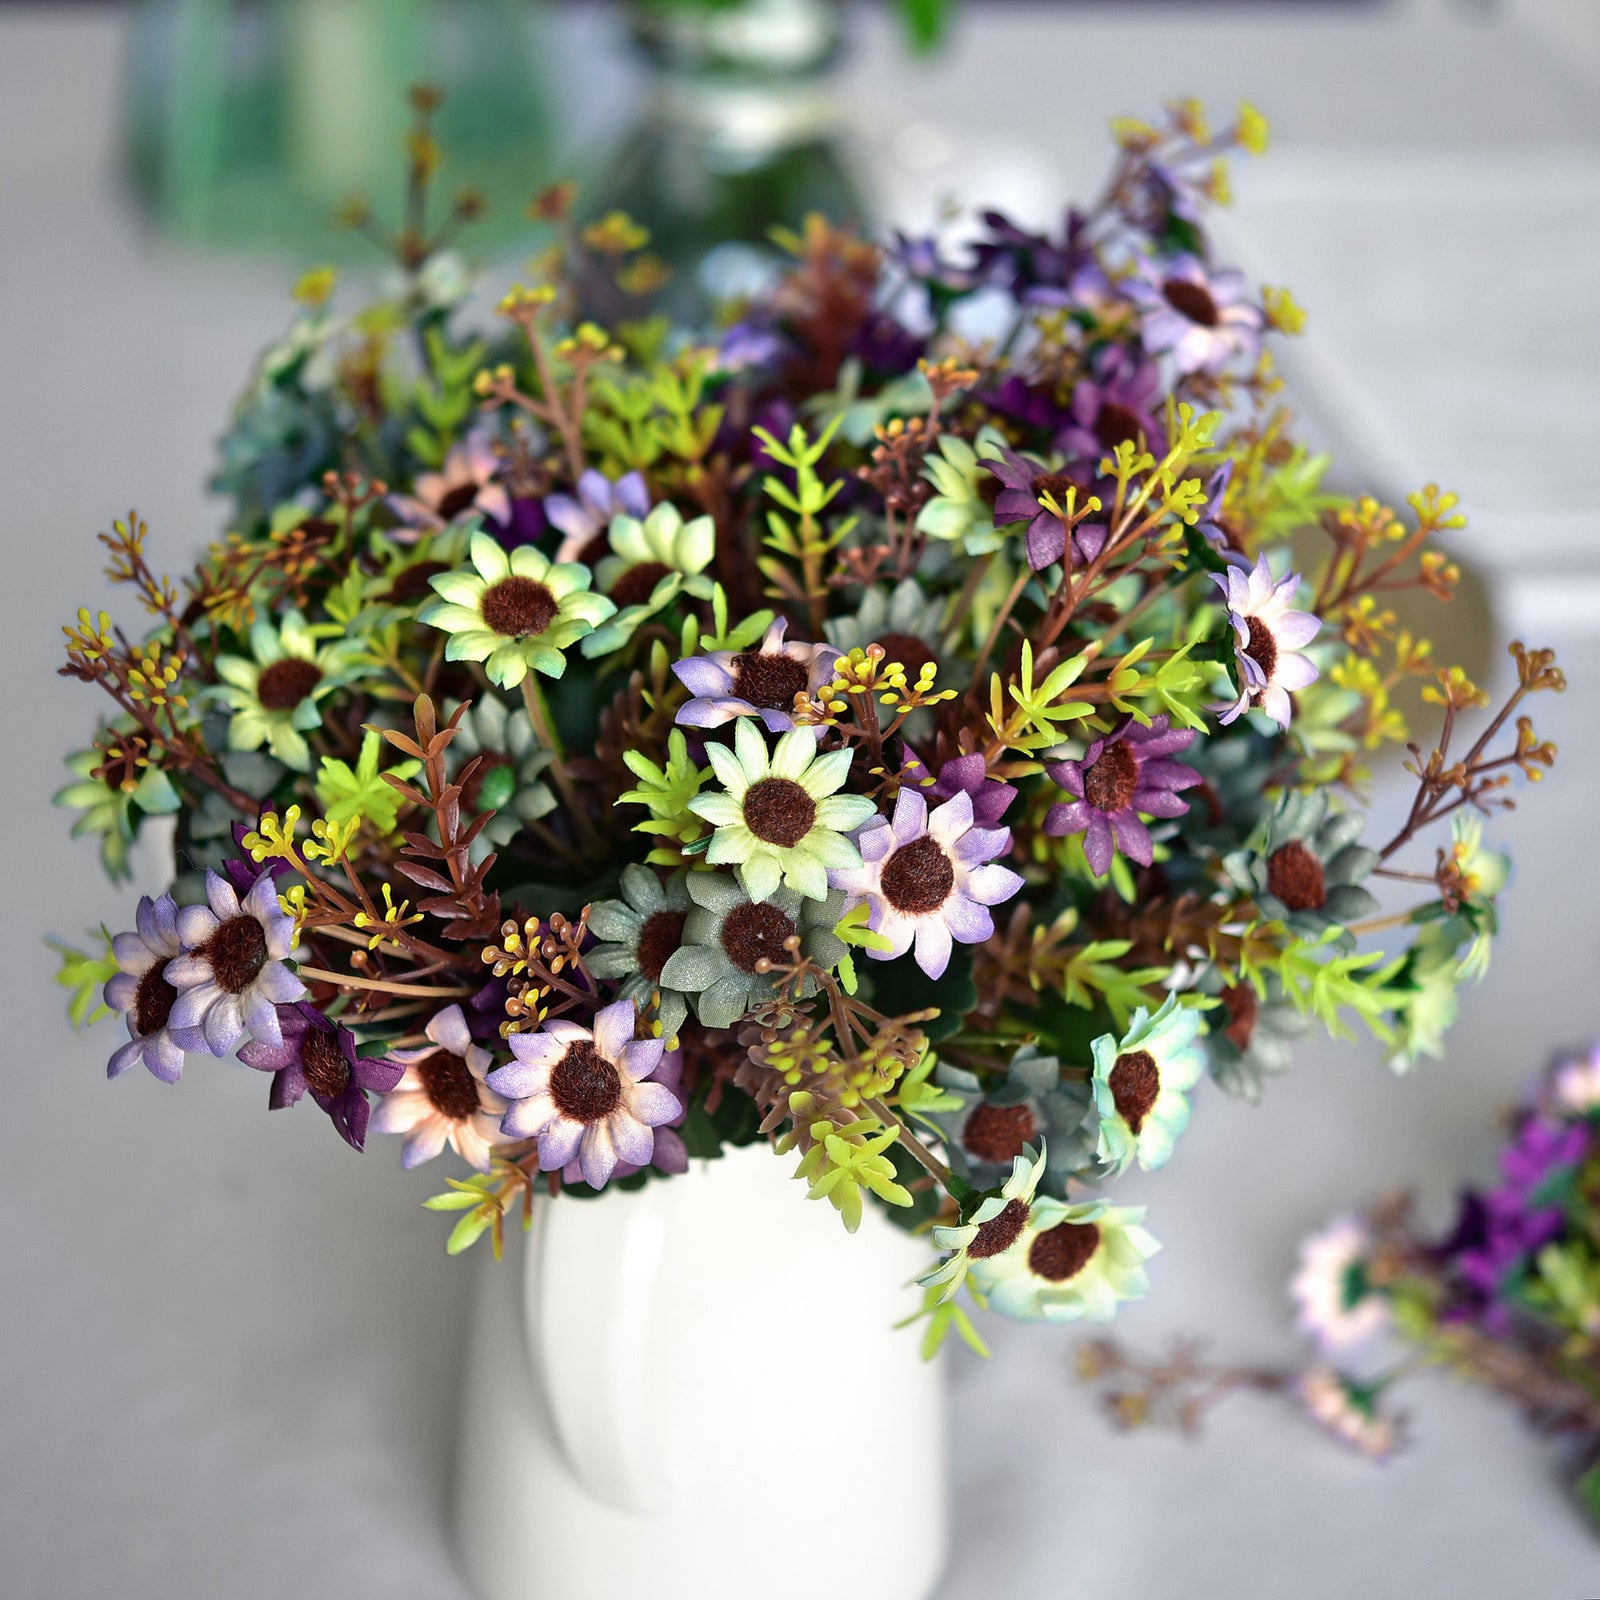 FiveSeasonStuff Daisy Silk Flowers, Outdoor Artificial Flowers Arrangement Decorations (4 Flower Bundles,) 13 inches Tall (Joyful Purple)